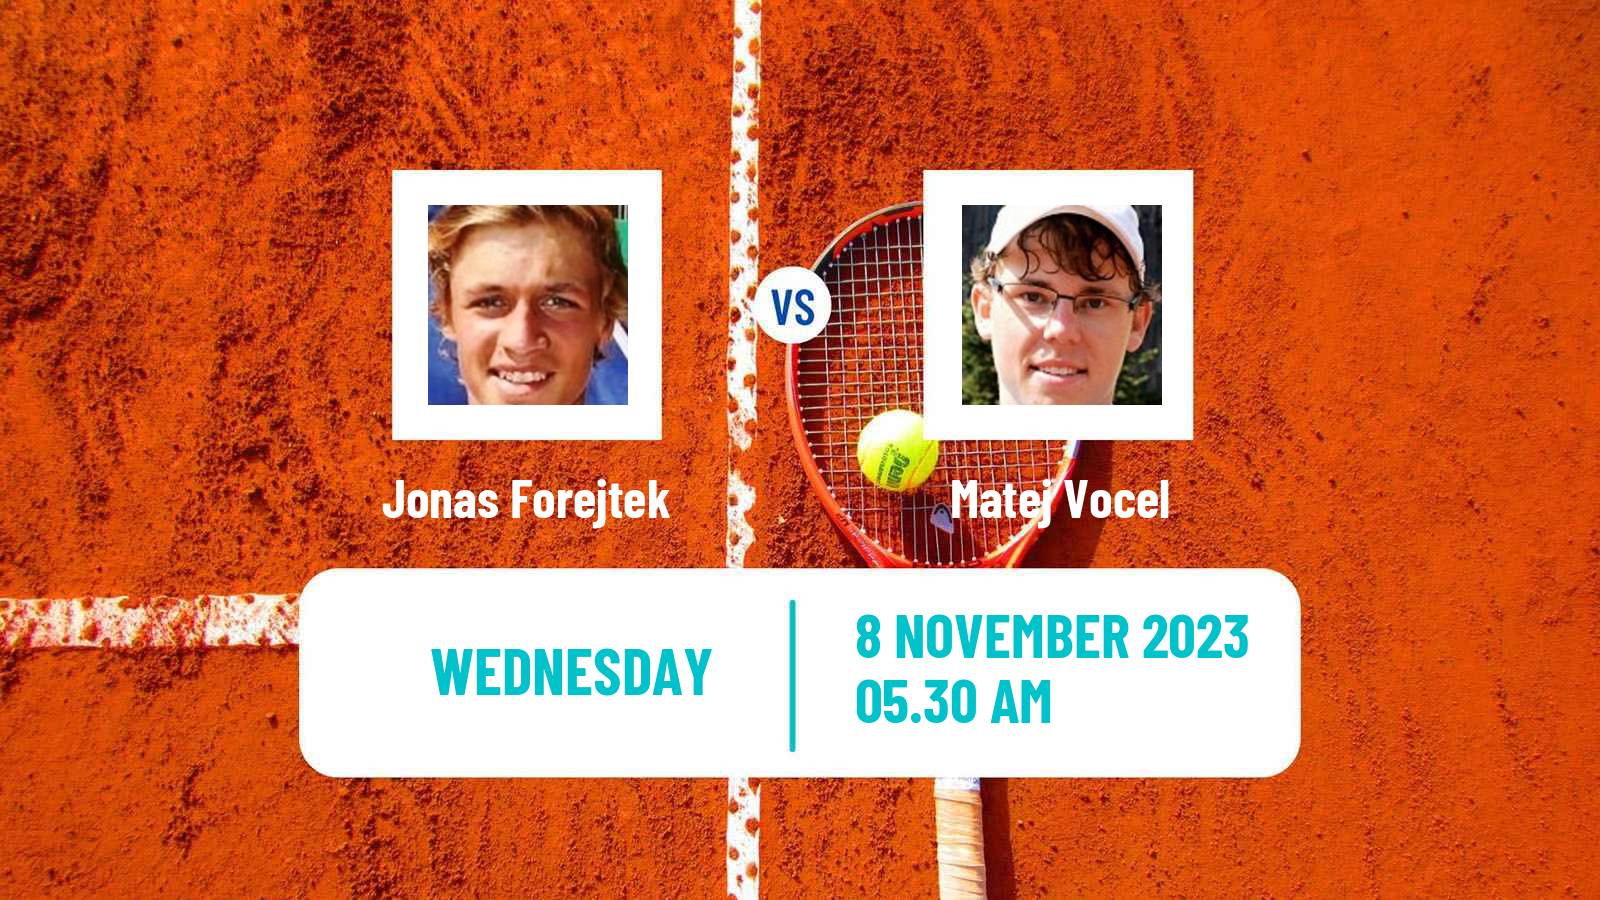 Tennis ITF M25 Trnava 2 Men Jonas Forejtek - Matej Vocel